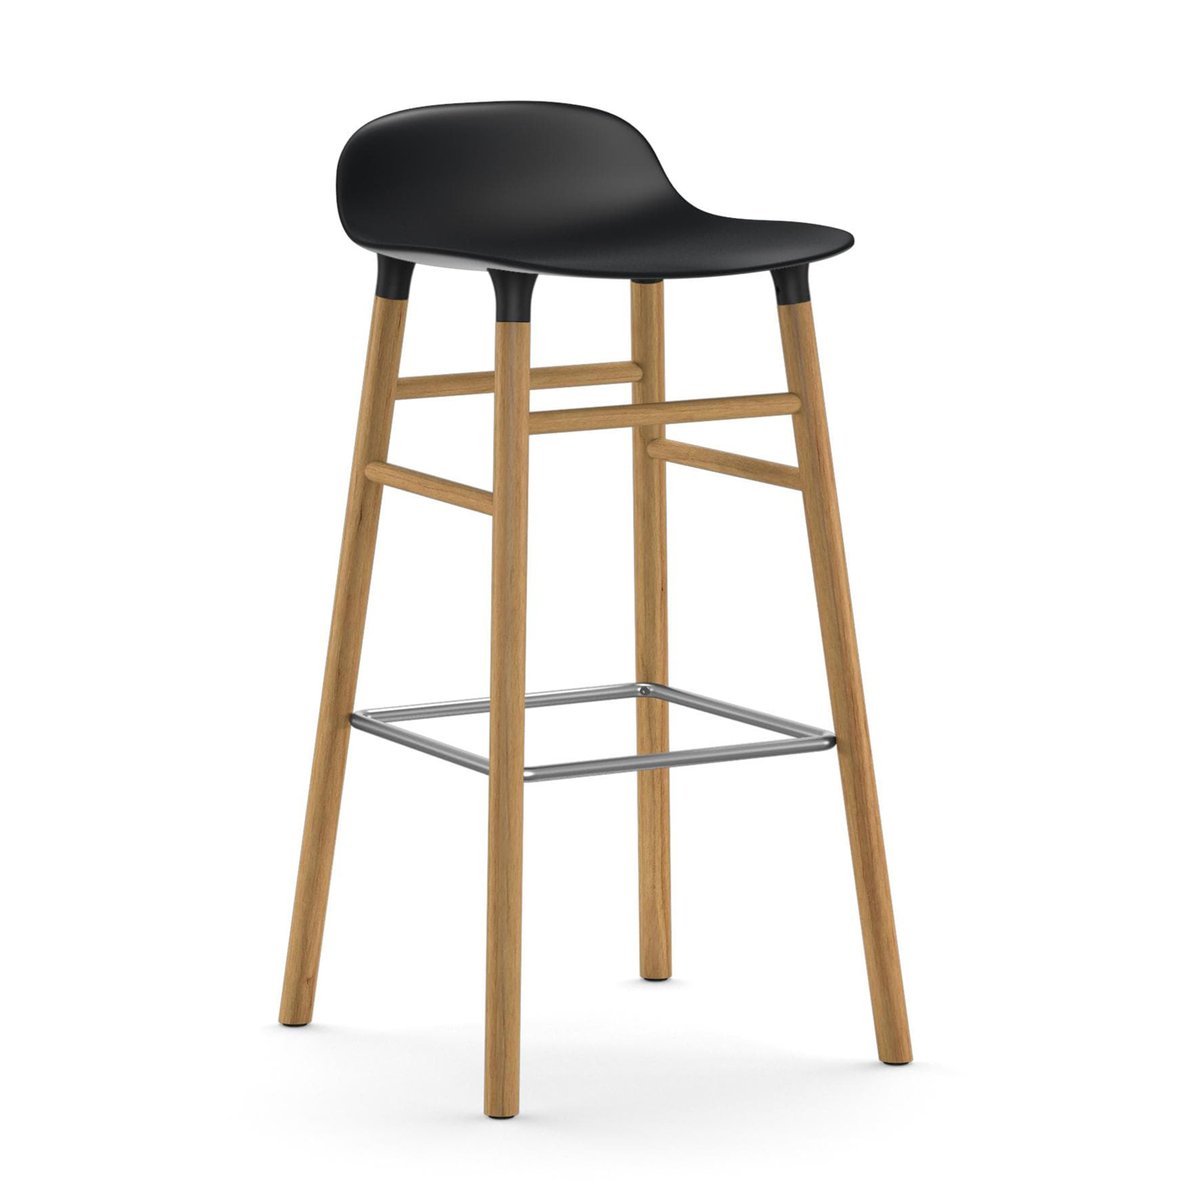 Normann Copenhagen Form Chair barkruk eiken poten zwart